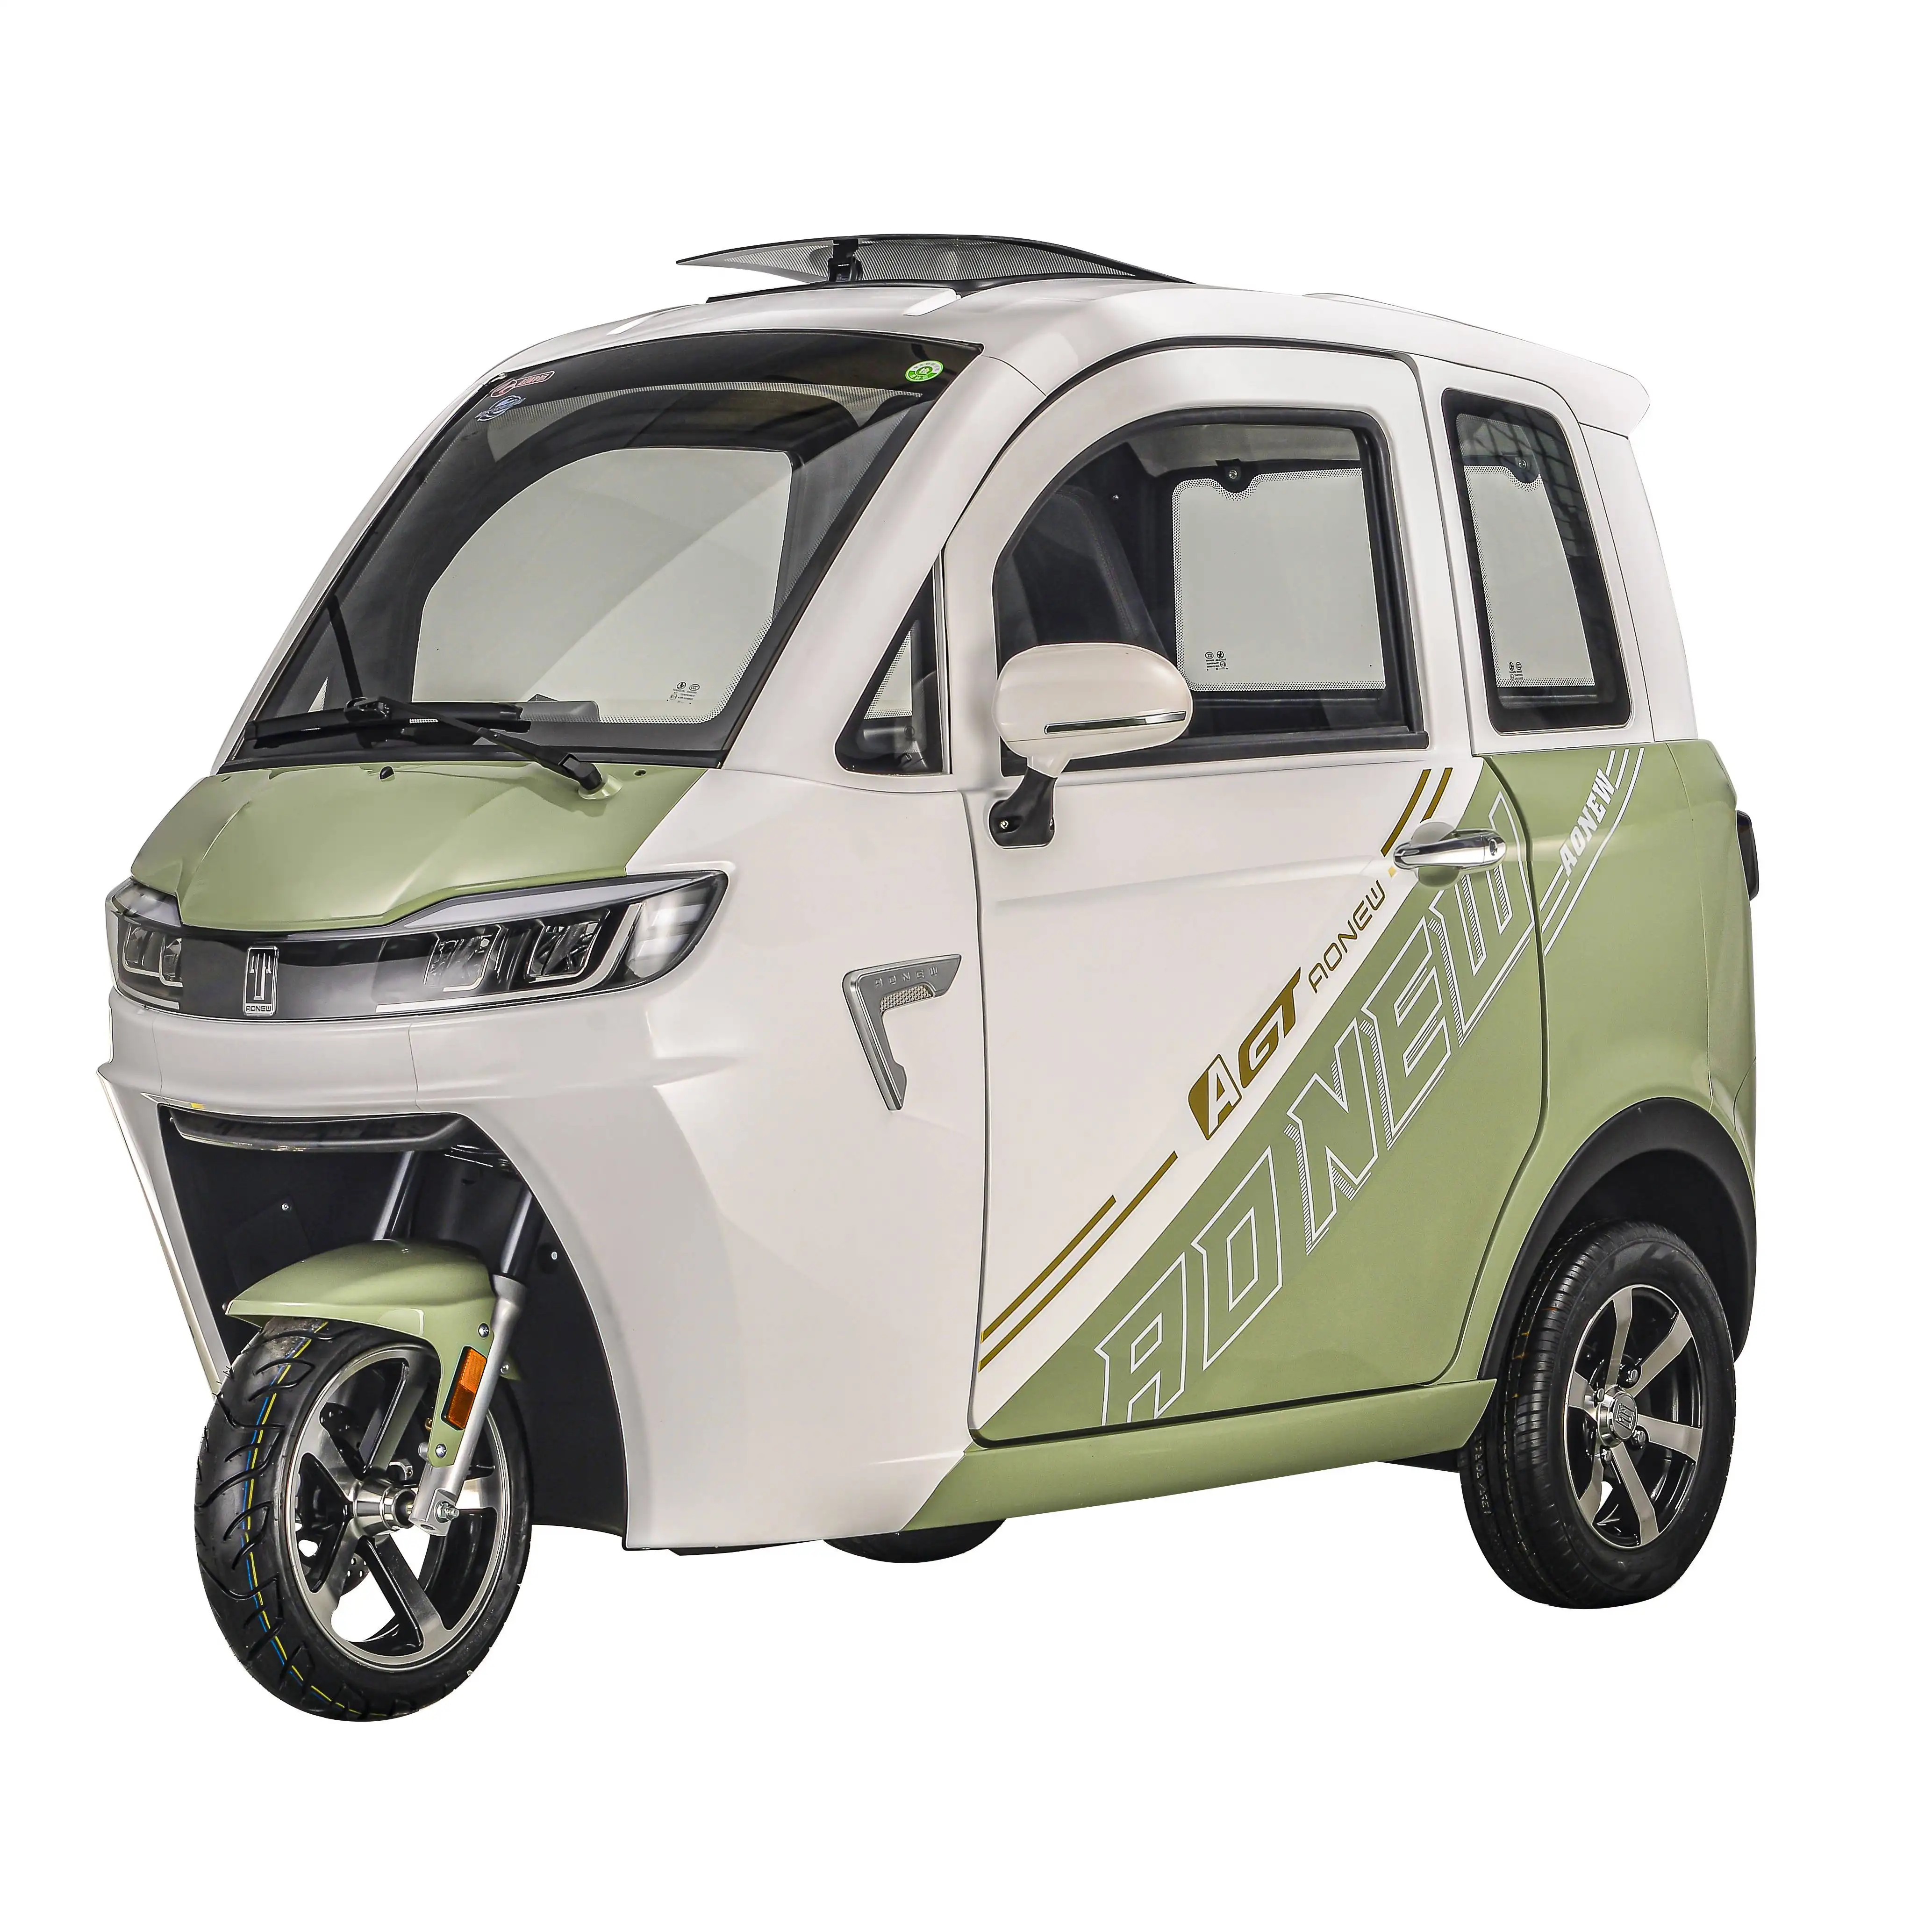 Tricicli elettrici caldi tre ruote scooter 1500w mini auto famiglia veicolo elettrico 2 posti